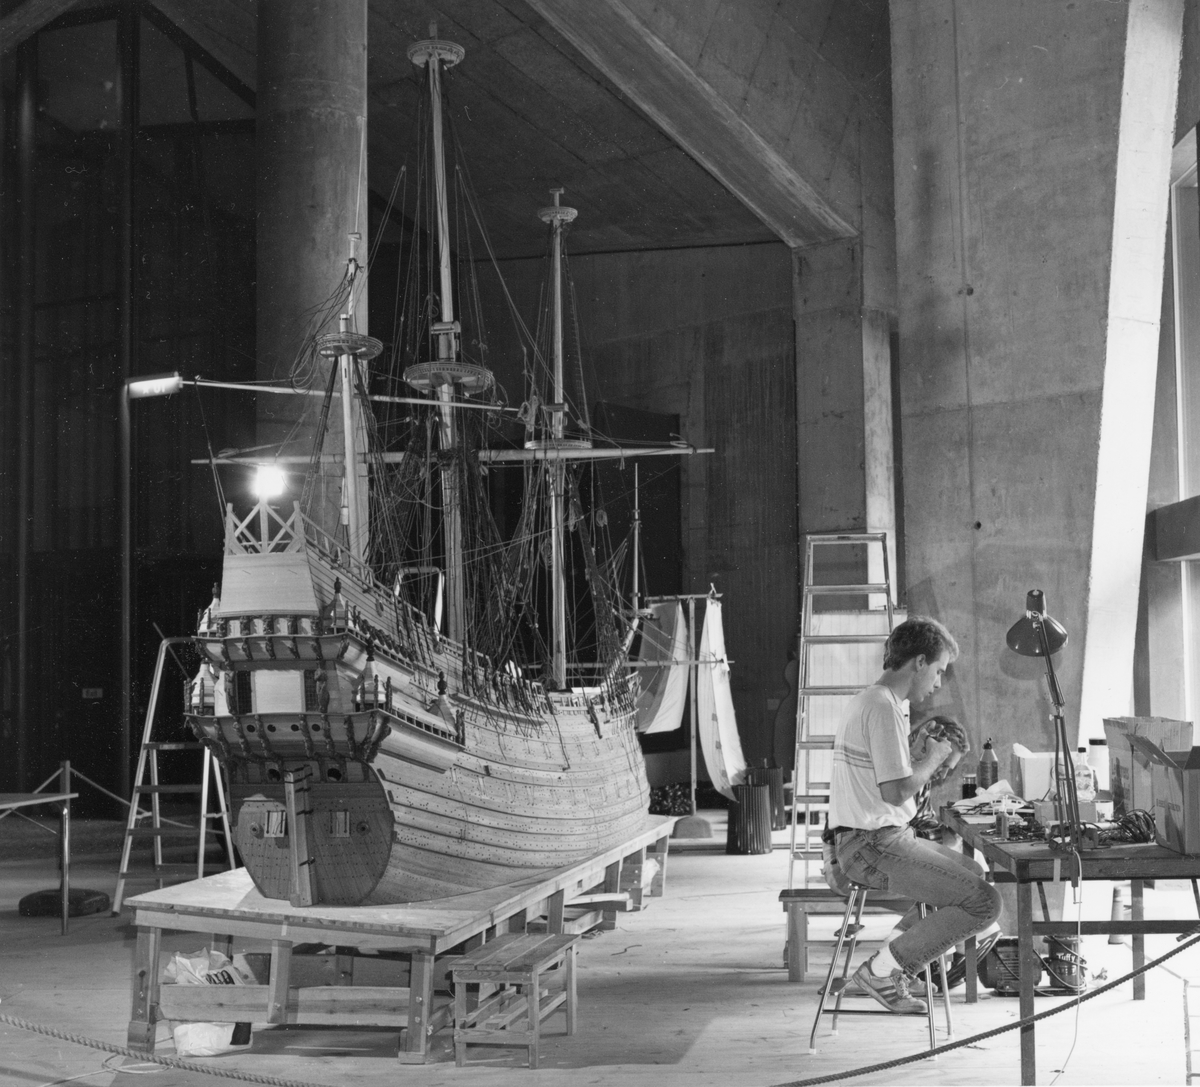 Modellbyggare Stefan Bruhn i arbete med modellen av Vasa i skala 1:10.